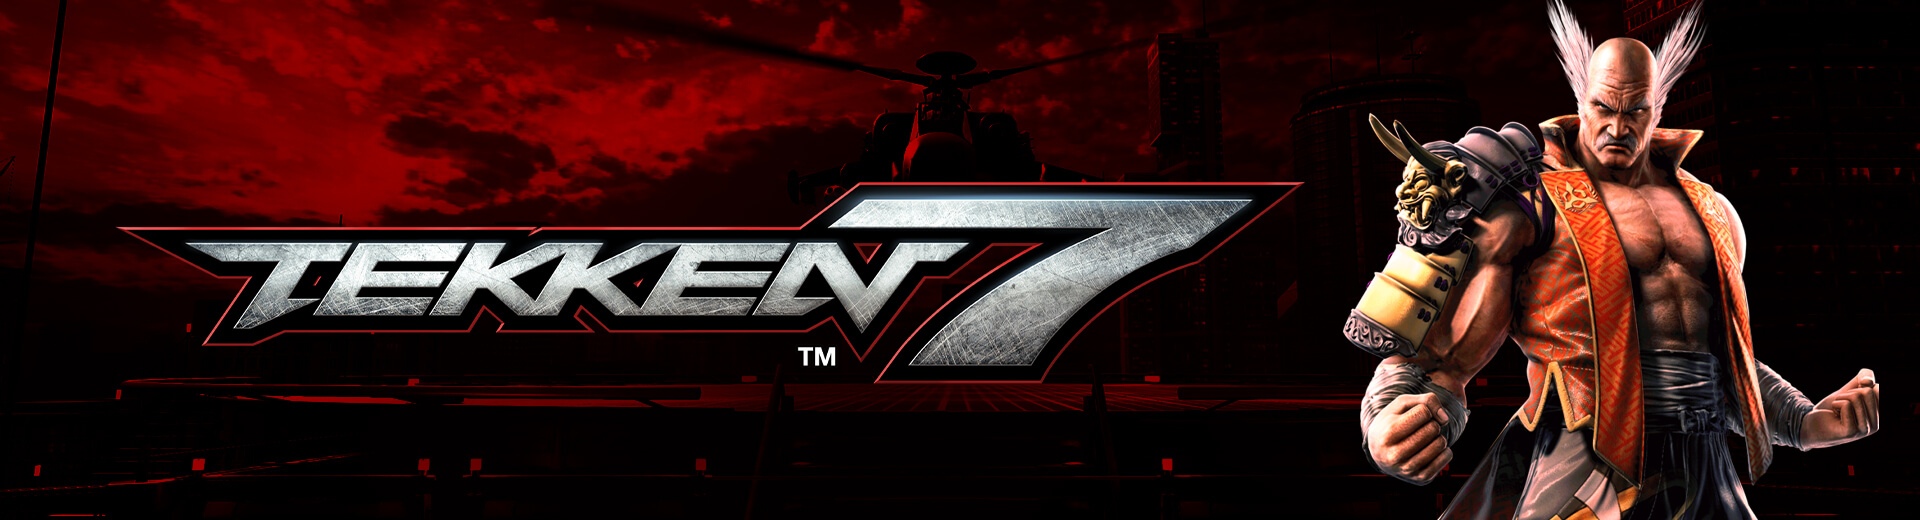 Tekken 7 #2 @ The Cave